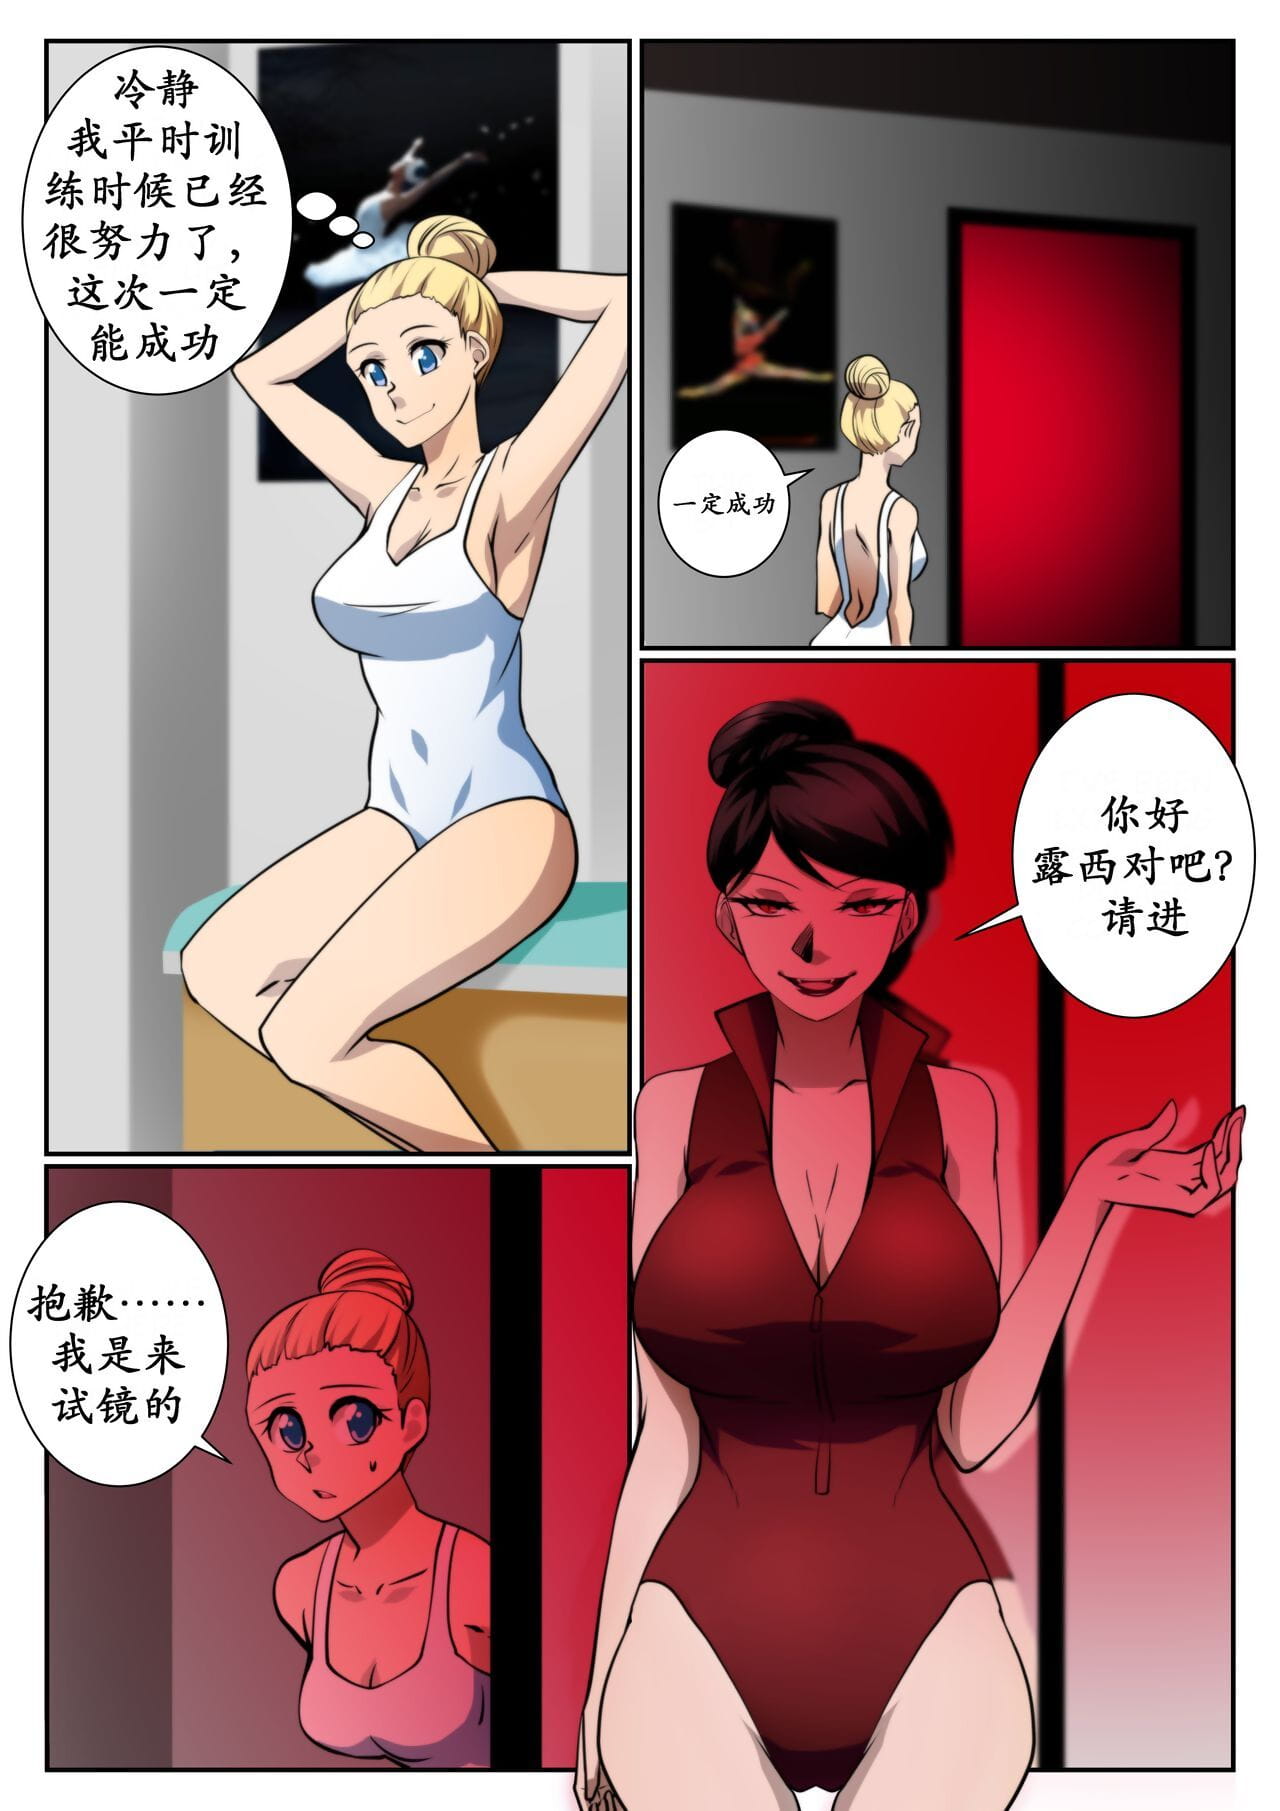 吸血姬首秀（k记翻译） page 1